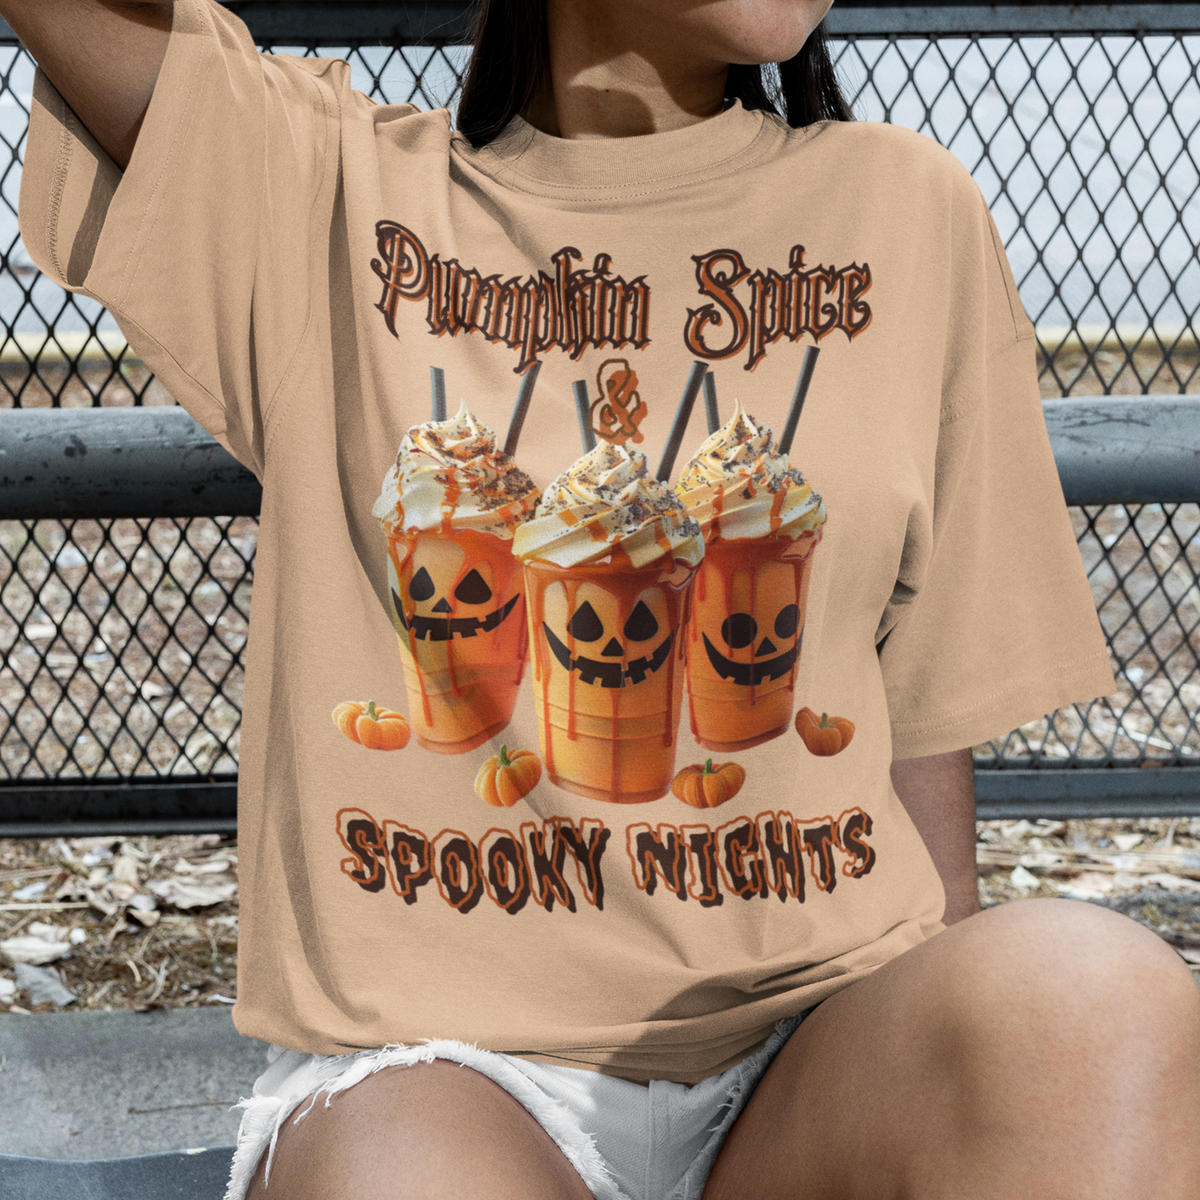 Official Pumpkin Spice Latte Tester Tee, Pumpkin Spice Latte Shirt, Tis' The Season, Coffee Lovers, Cute Fall T-Shirt, Halloween Shirt, Spooky nights, Halloween tee